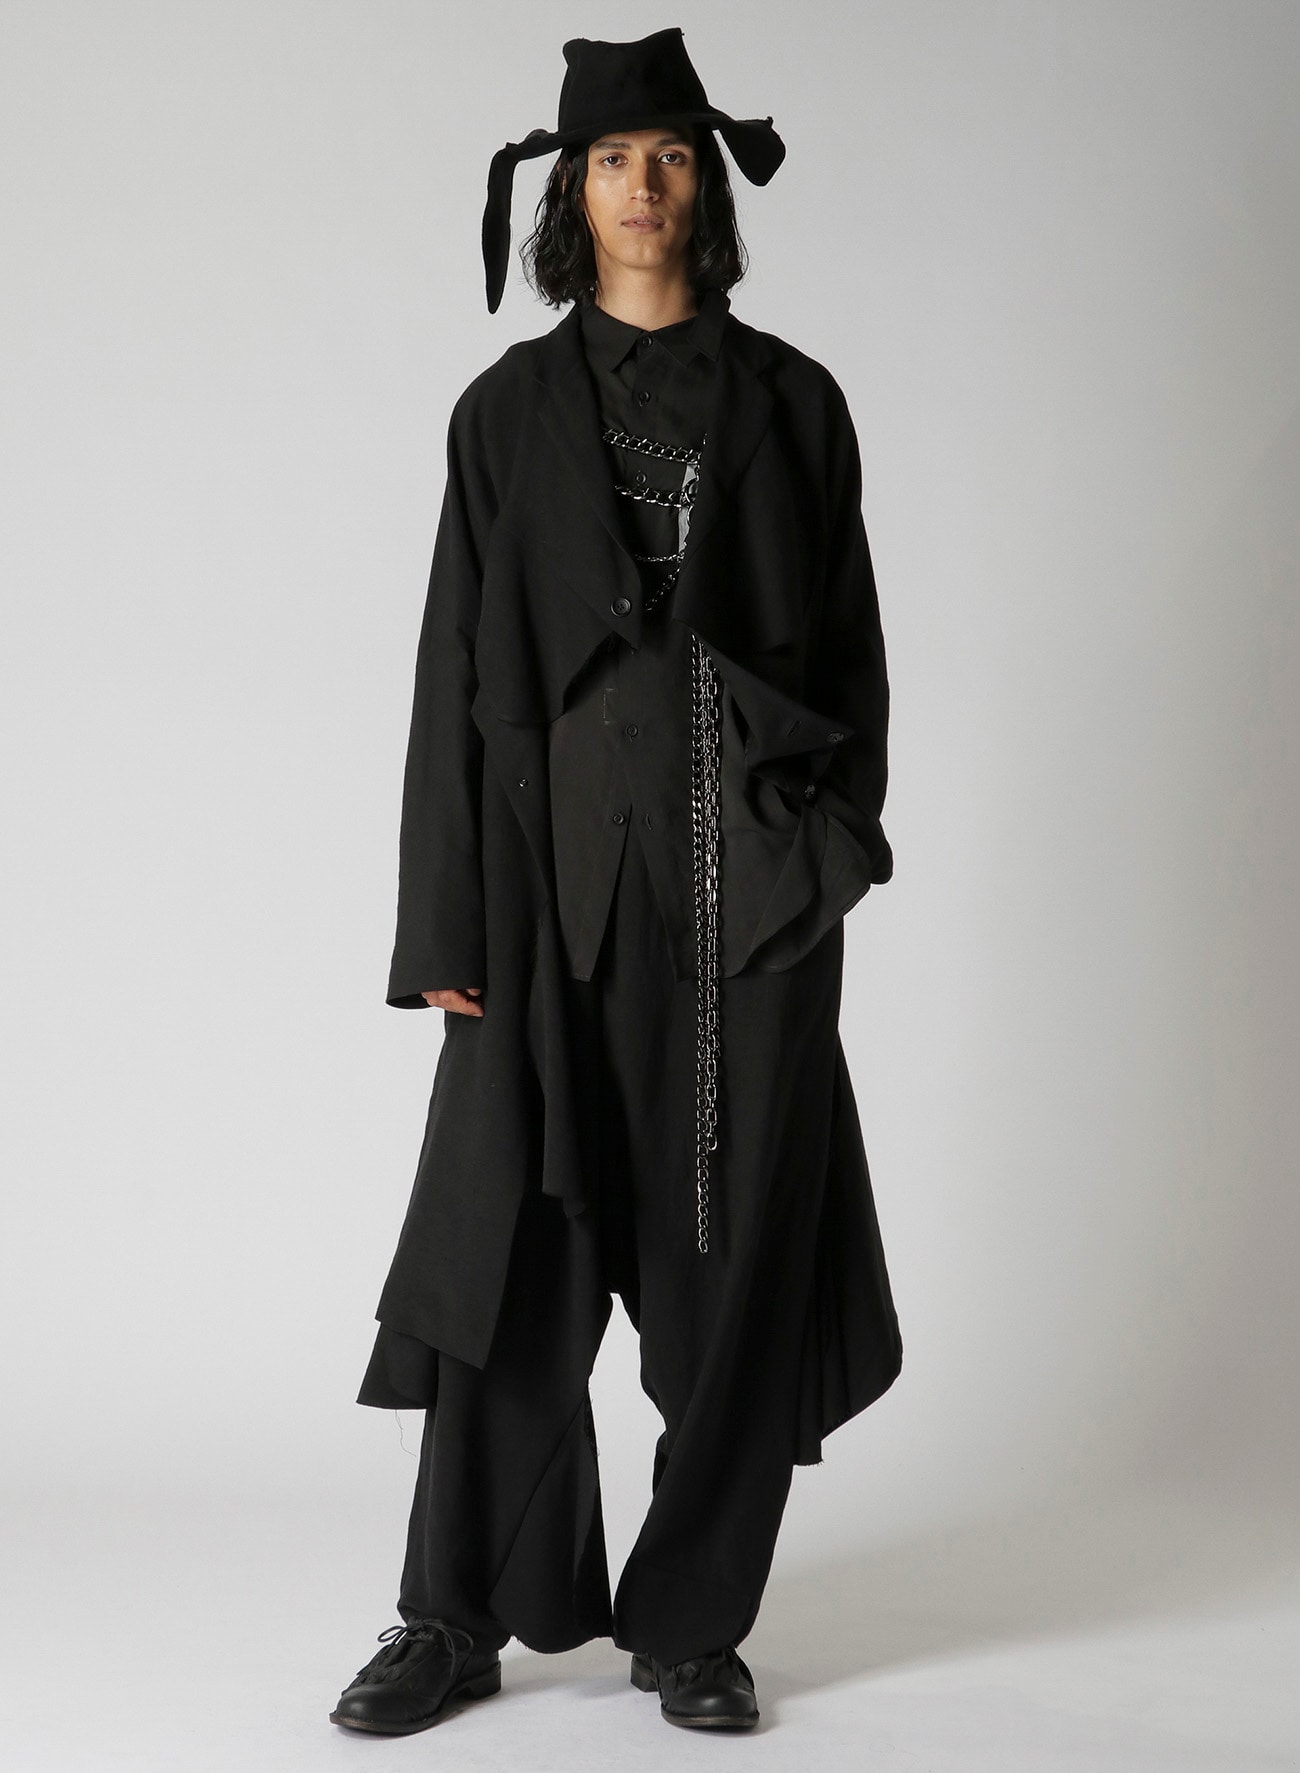 LI/RYCANVAS I-UNFIXED SAFETY PIN JKT(S Black): Yohji Yamamoto POUR 